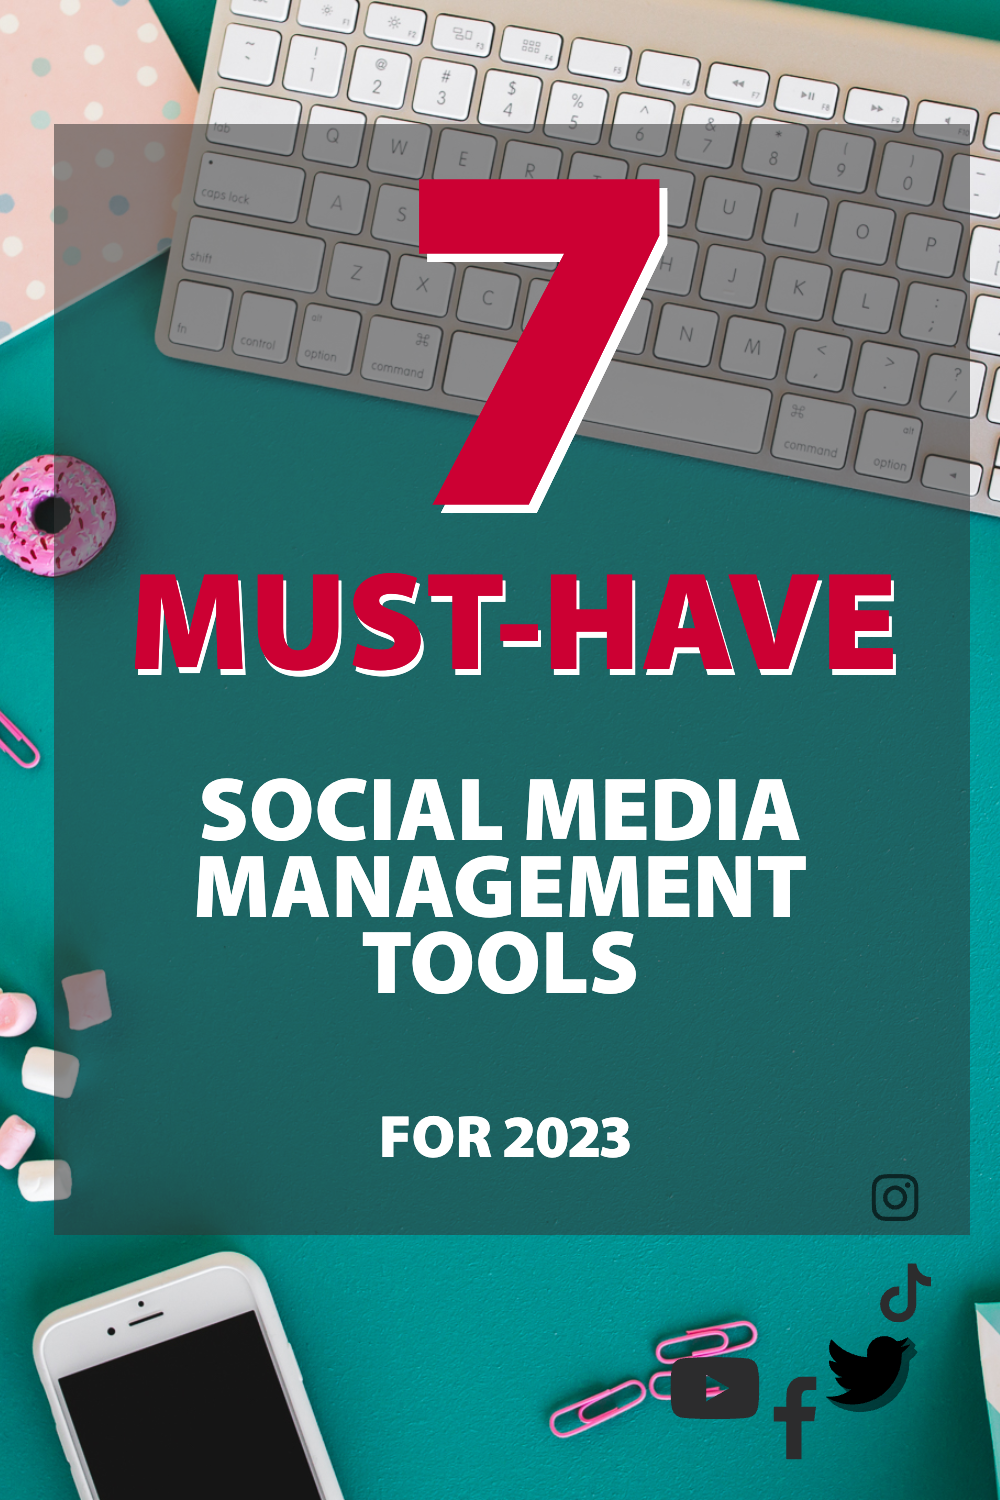 7 herramientas de gestión de redes sociales imprescindibles para 2023